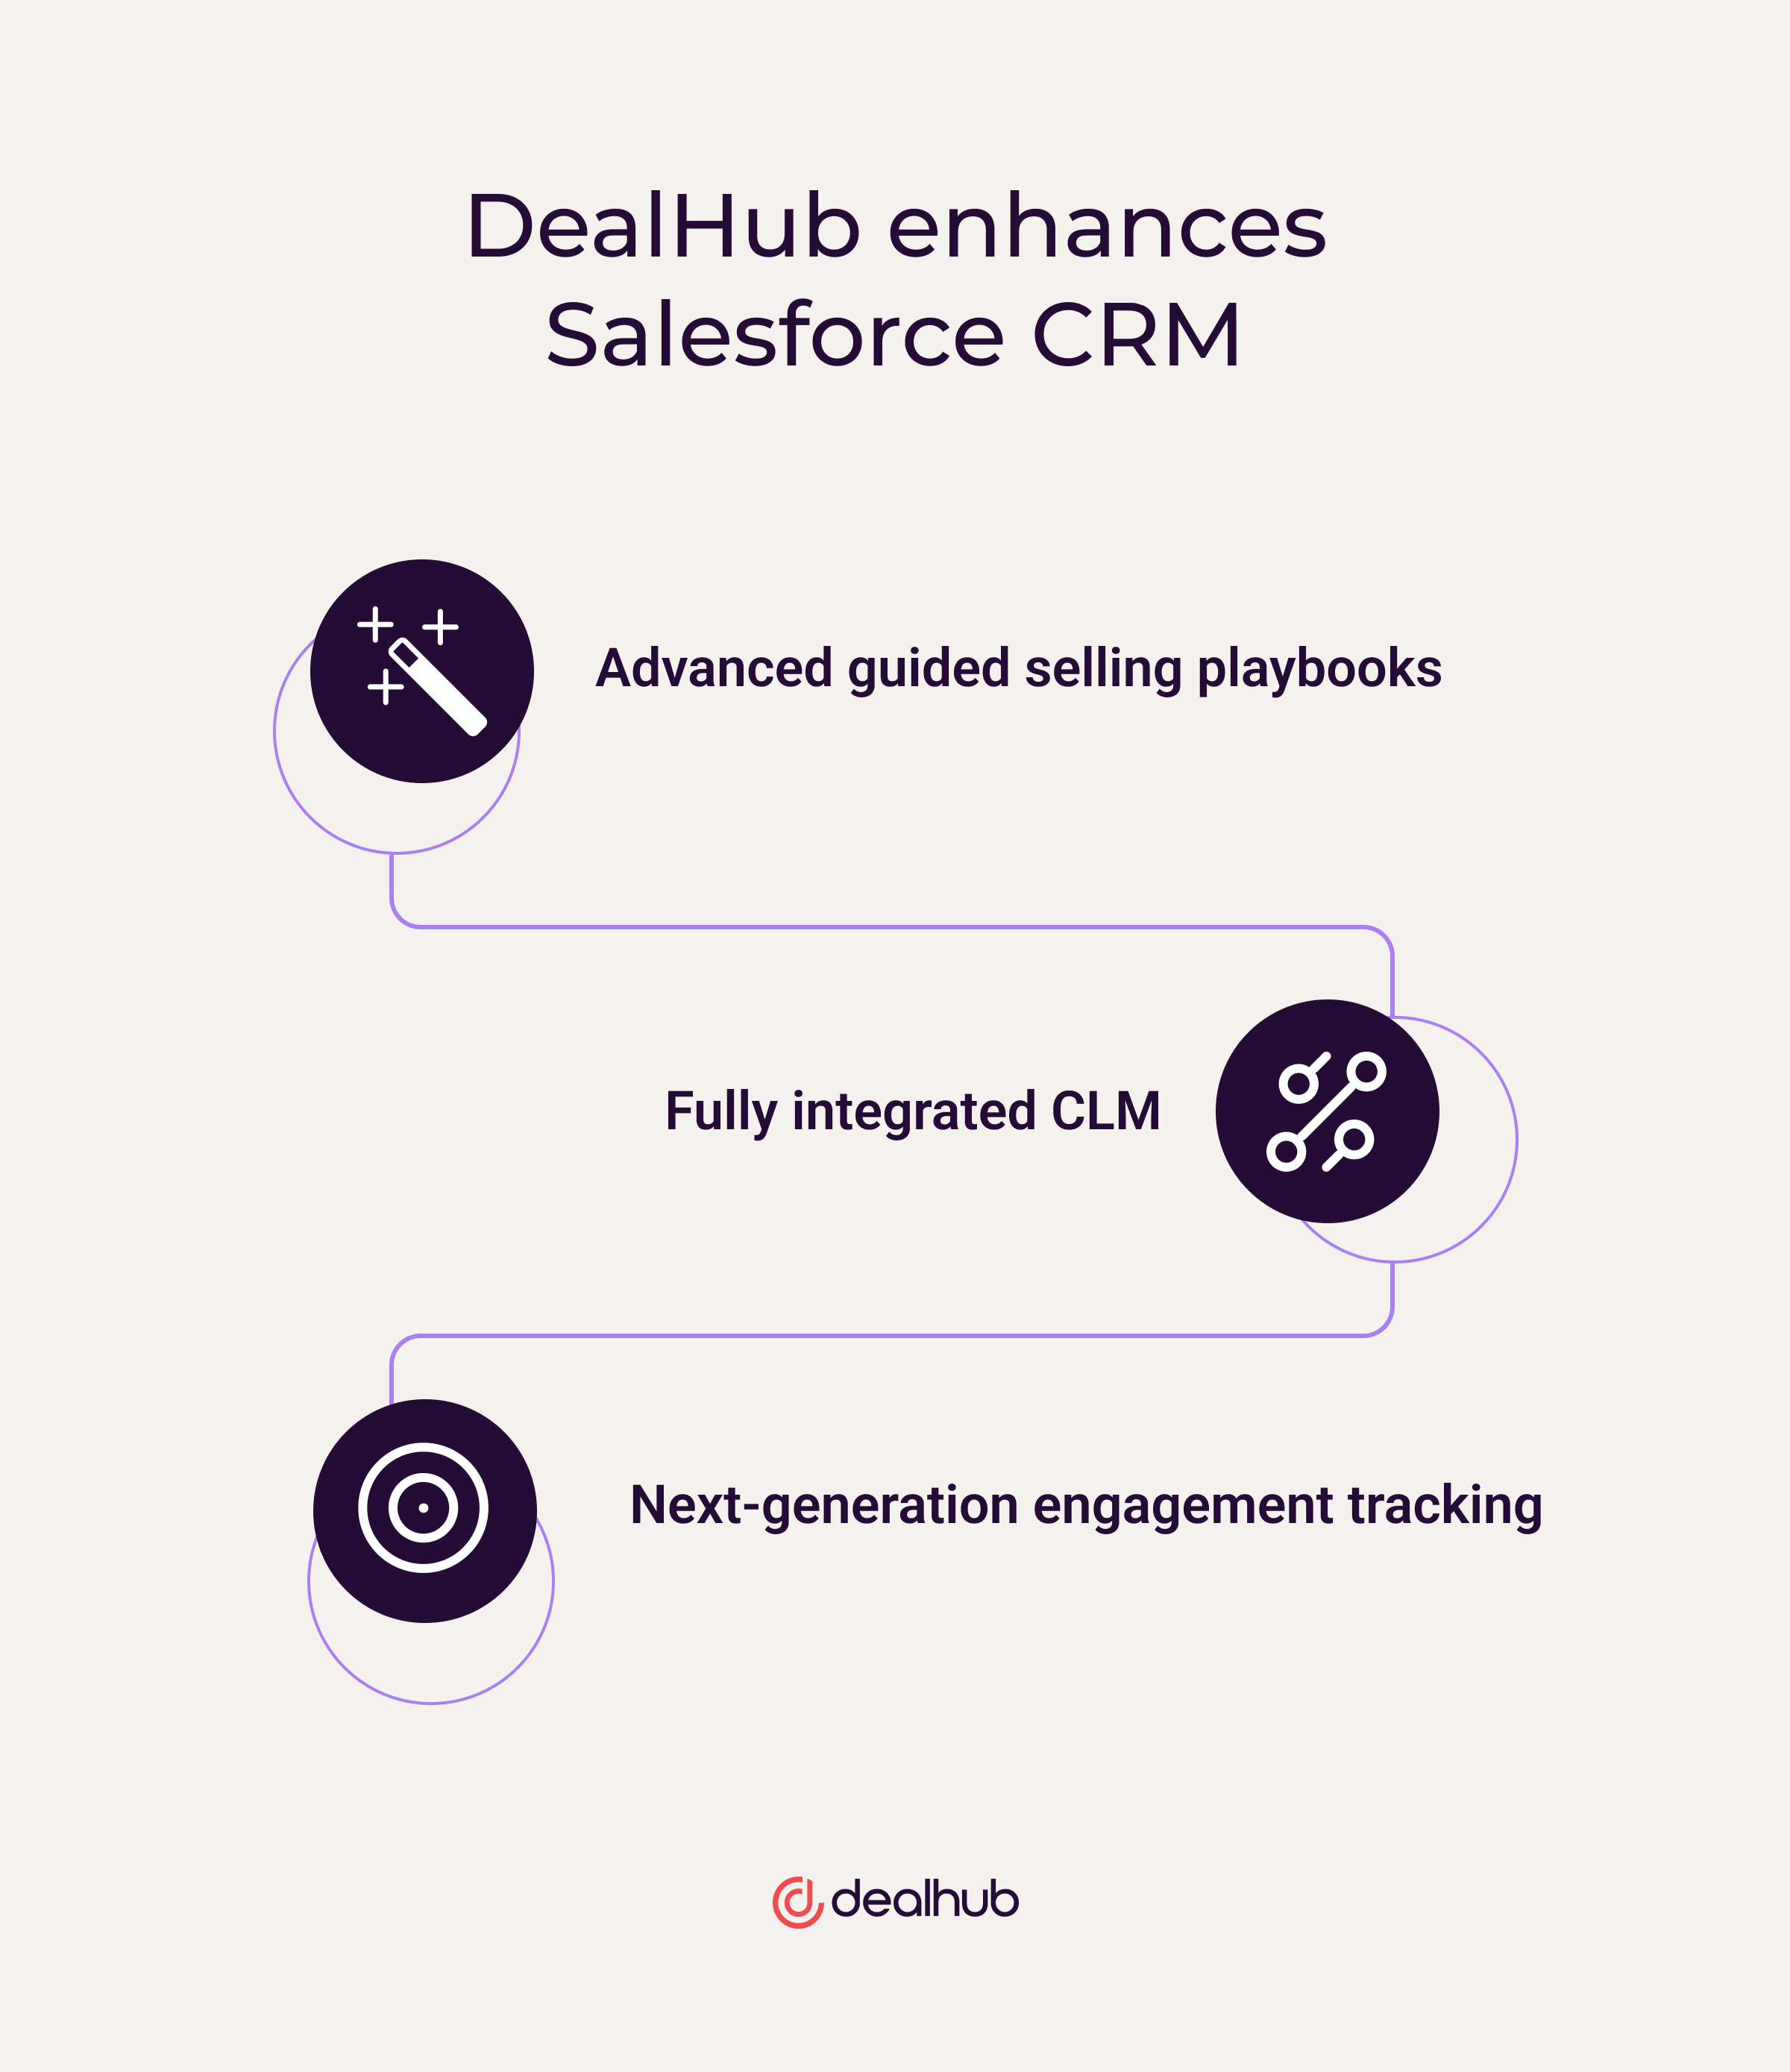 DealHub enhances Salesforce CRM